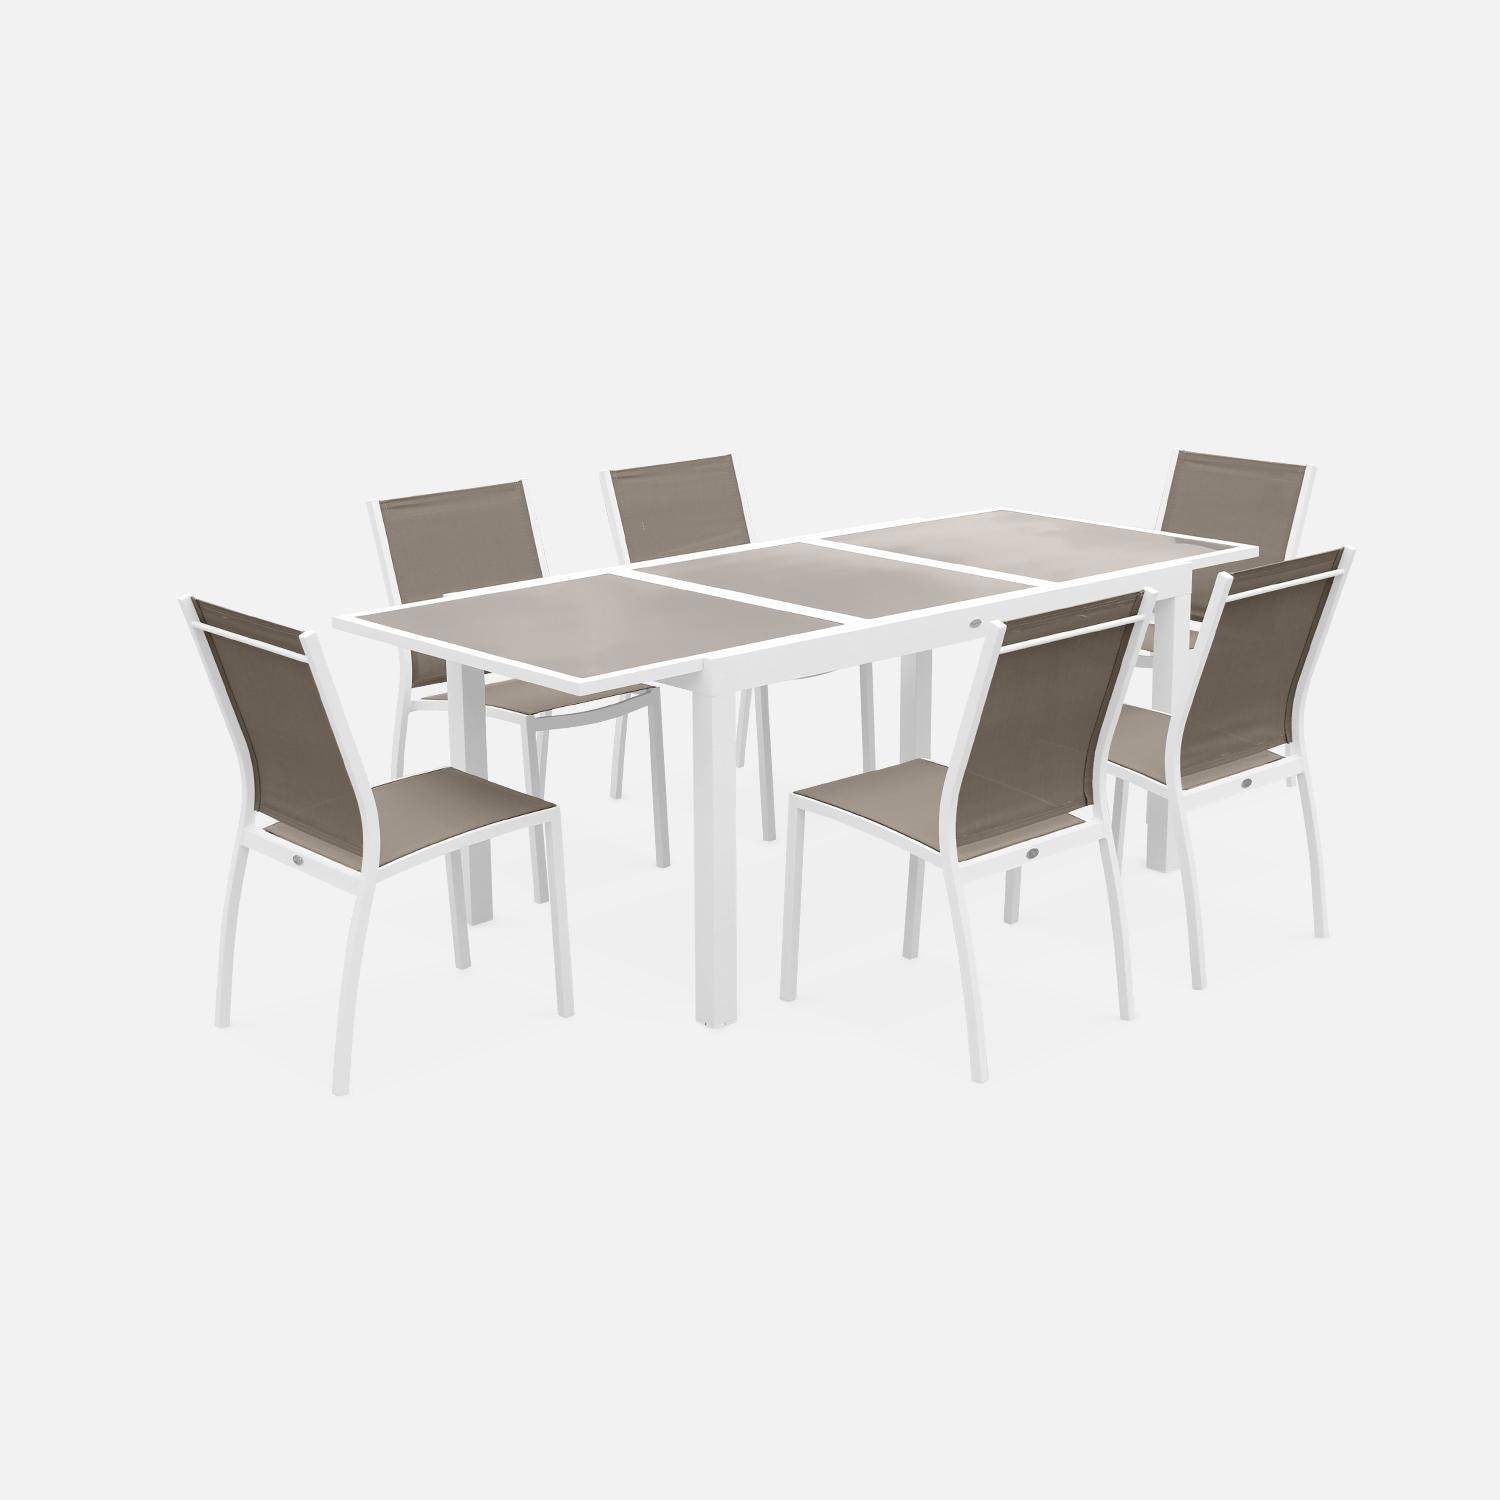 Tavolo da giardino allungabile - modello: Orlando, colore: Talpa - Tavolo in alluminio, dimensioni: 150/210cm, ripiano in vetro, prolunga e 6 sedie in textilene,sweeek,Photo2